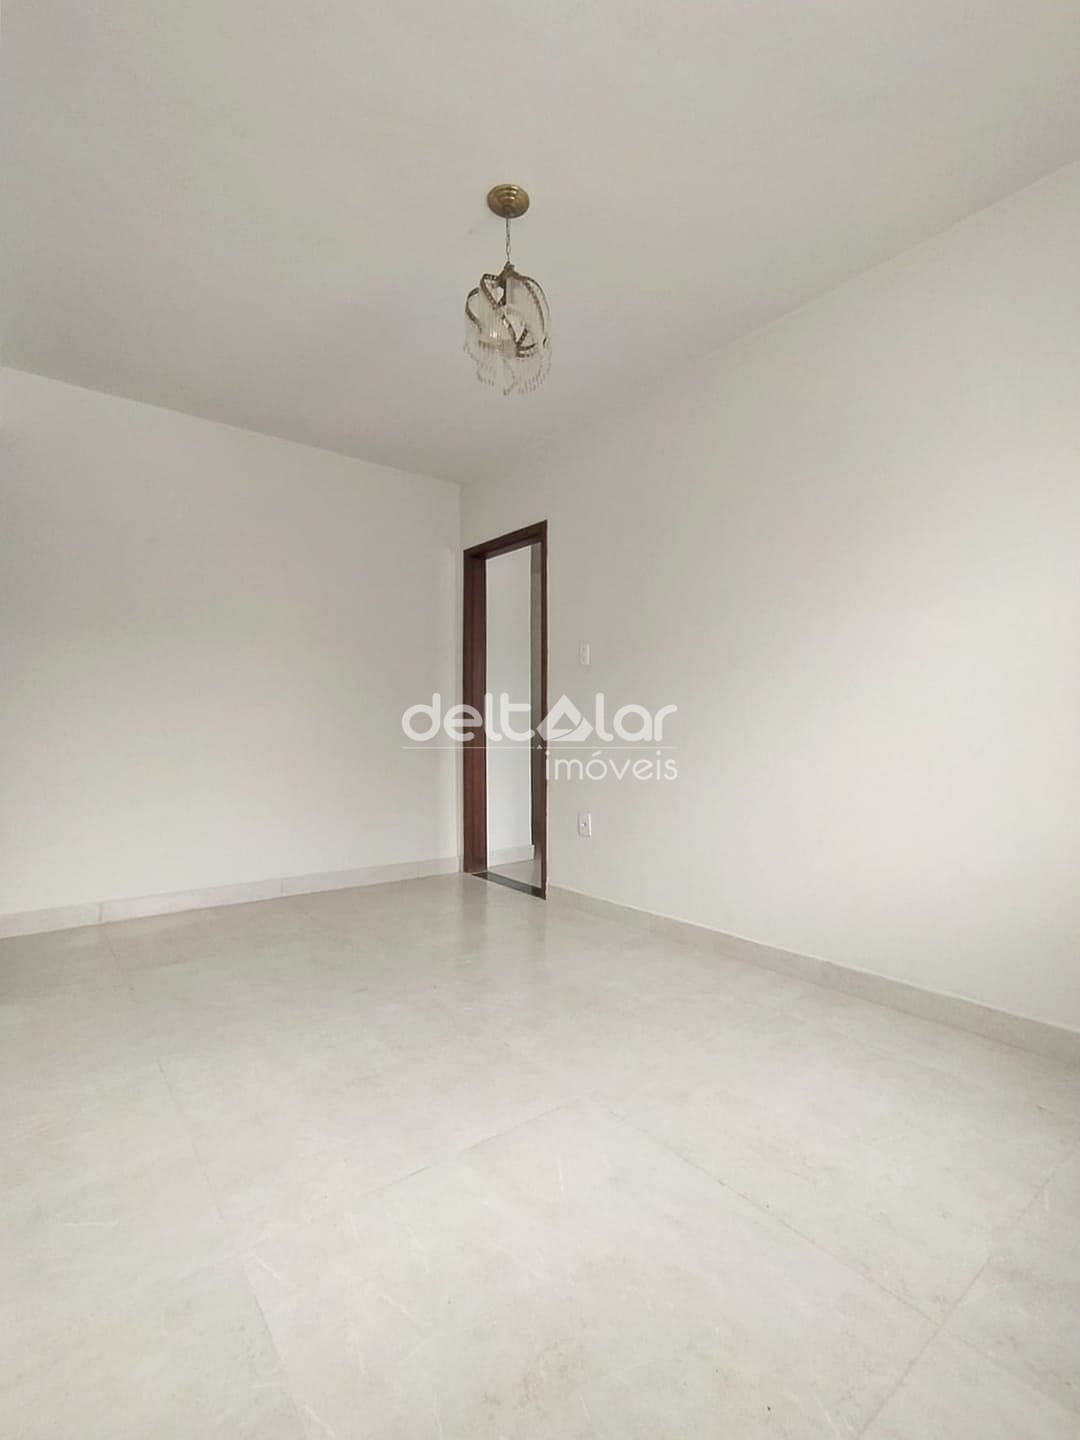 Apartamento, 2 quartos, 63 m² - Foto 2